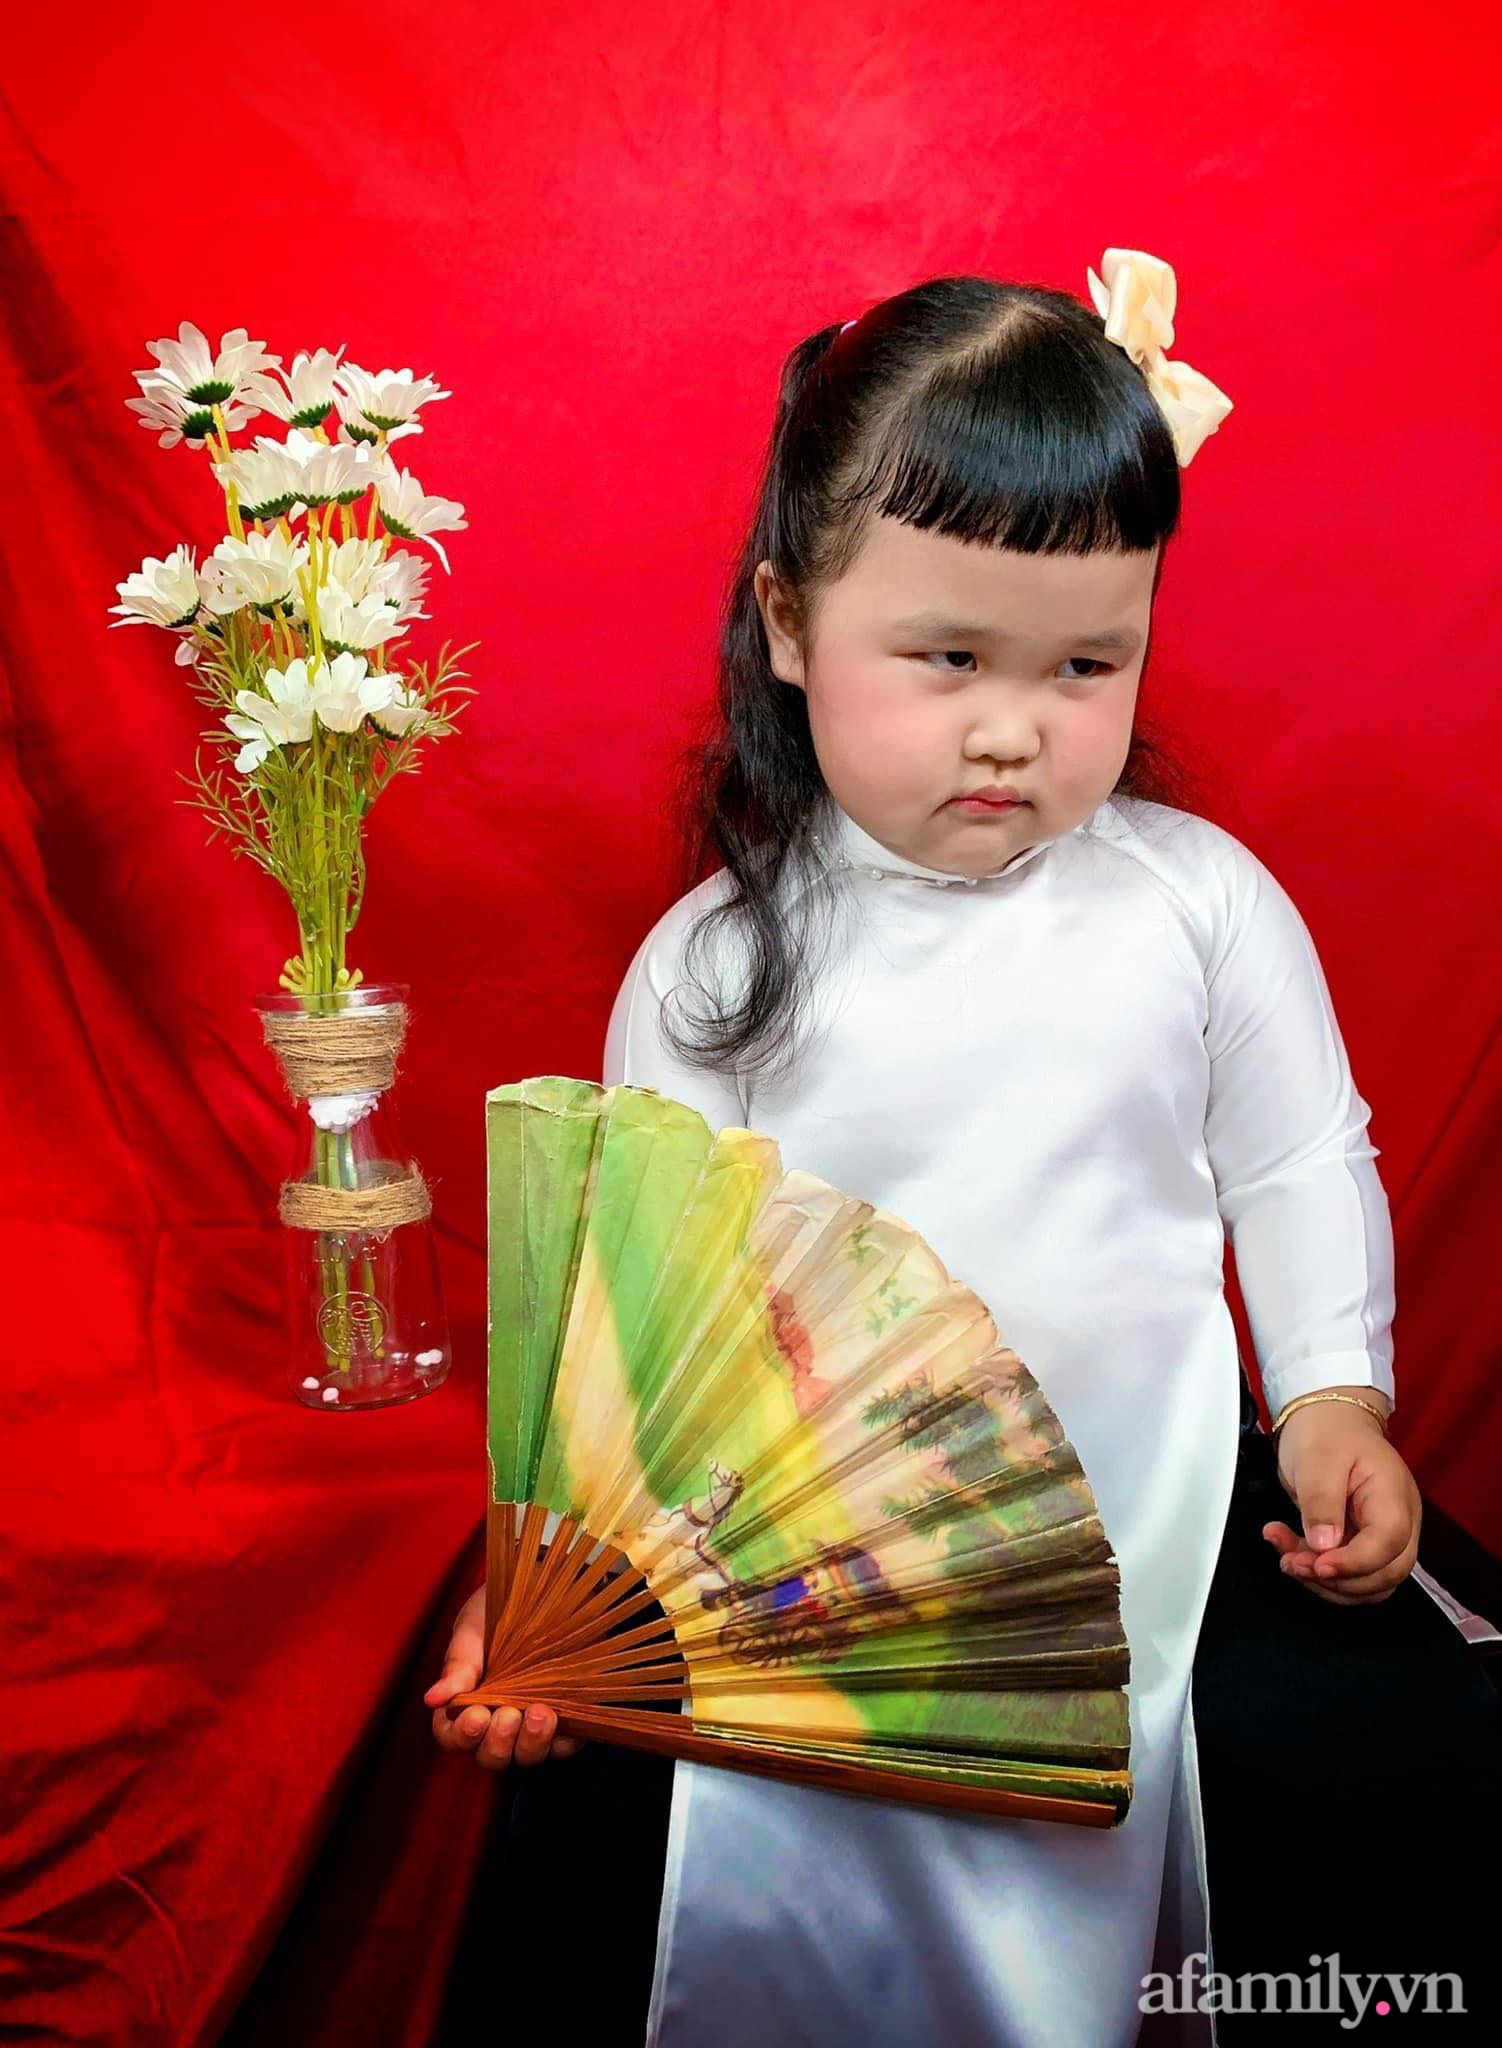 Áo dài là trang phục truyền thống của người Việt Nam, mang đến vẻ đẹp kiêu sa và trang nhã. Hãy chiêm ngưỡng những bức ảnh tuyệt đẹp về áo dài trên mạng xã hội để thấy rõ sự tinh tế và uyển chuyển của trang phục này.